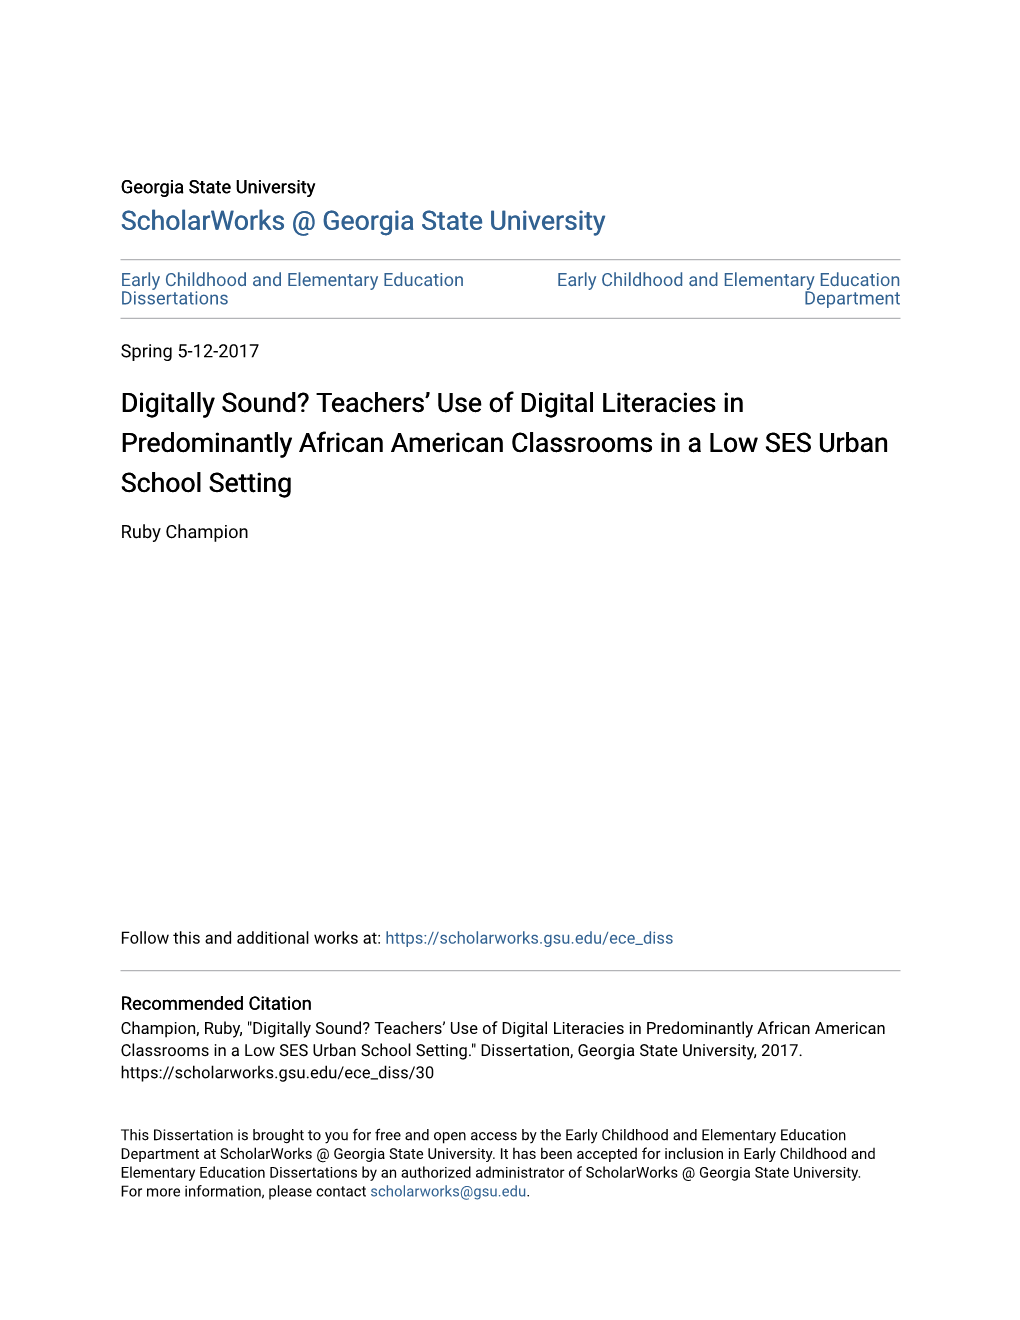 Teachers' Use of Digital Literacies in Predominantly African American